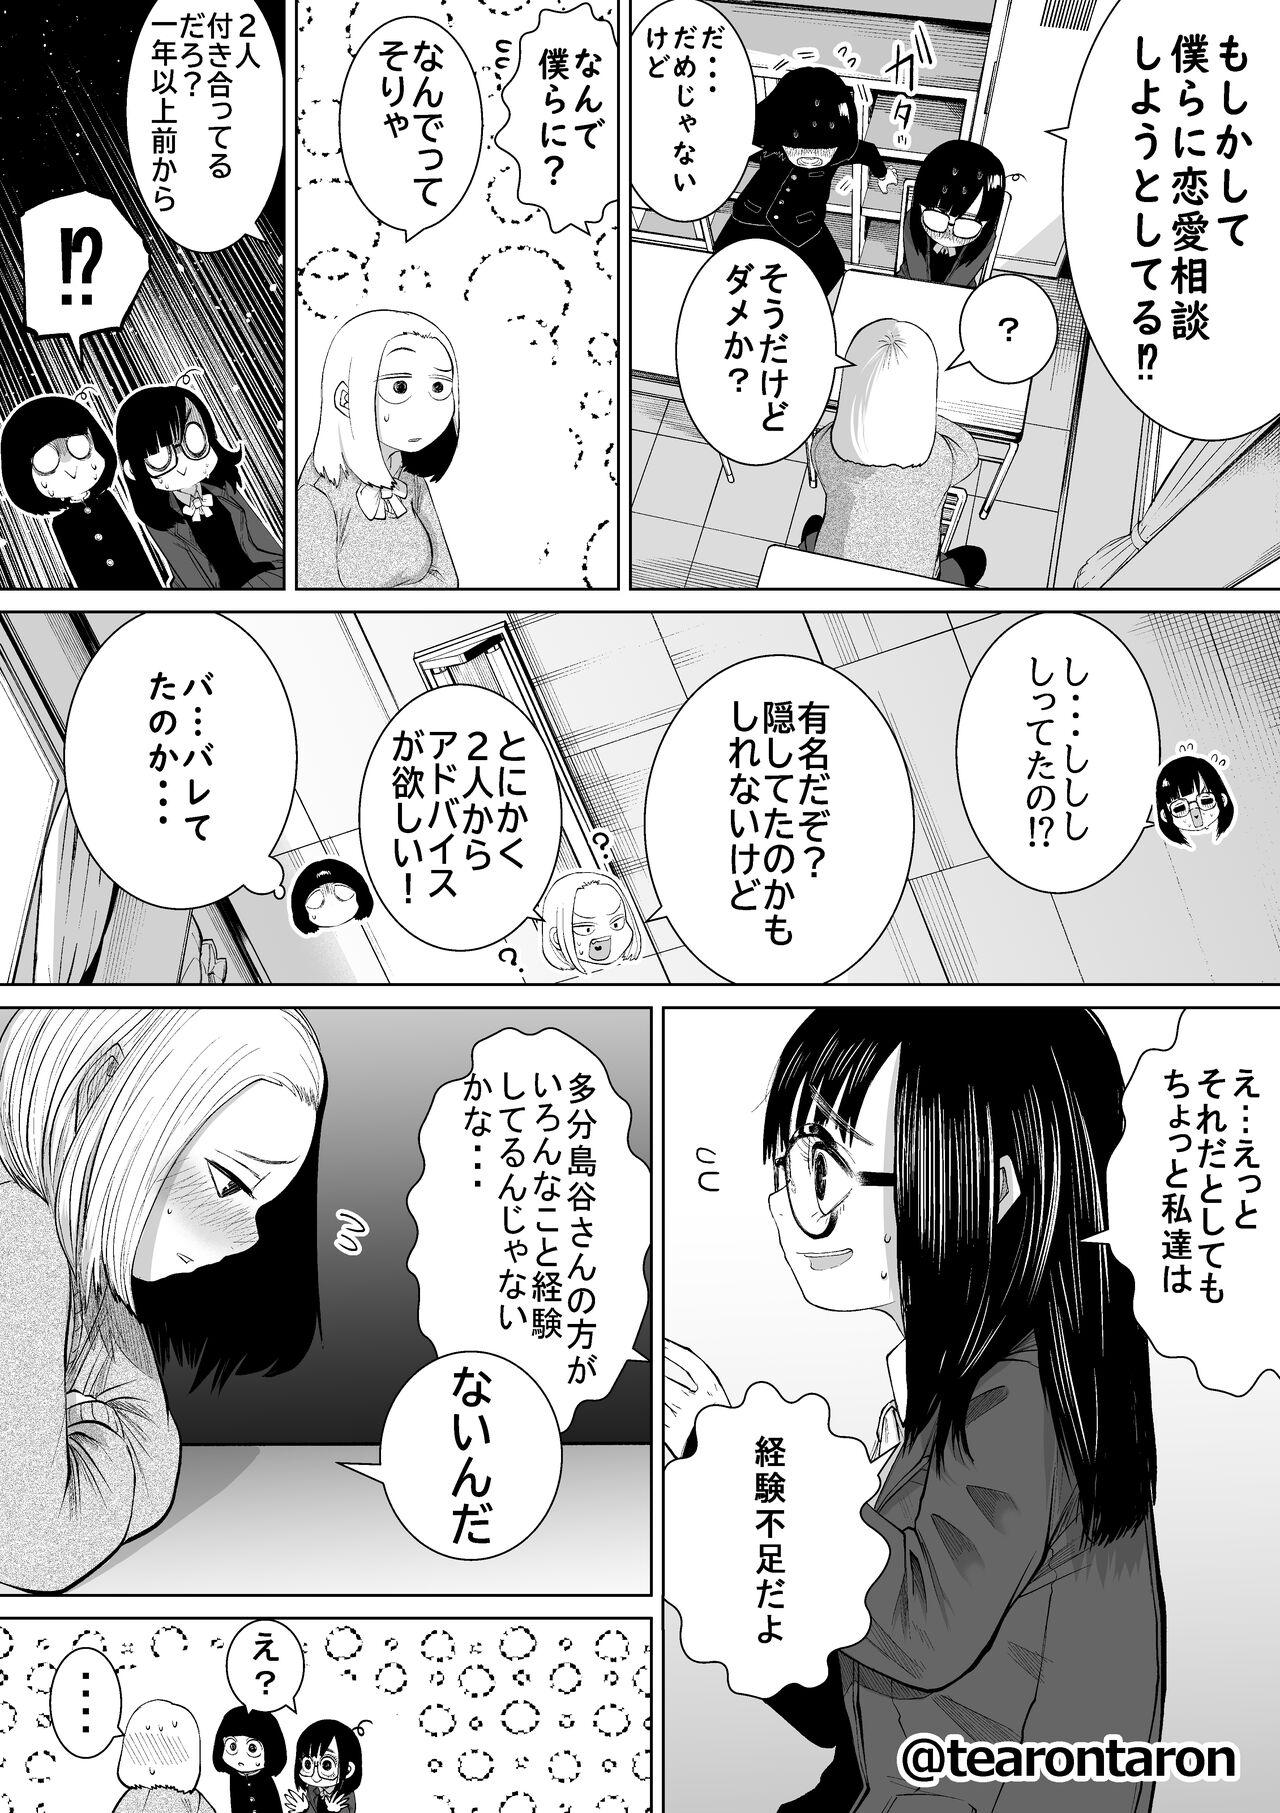 Fun Gakkou de Ichiban Jimi na Futari ga Tsukiatte kara no Hanashi 3 - Original Francais - Page 5